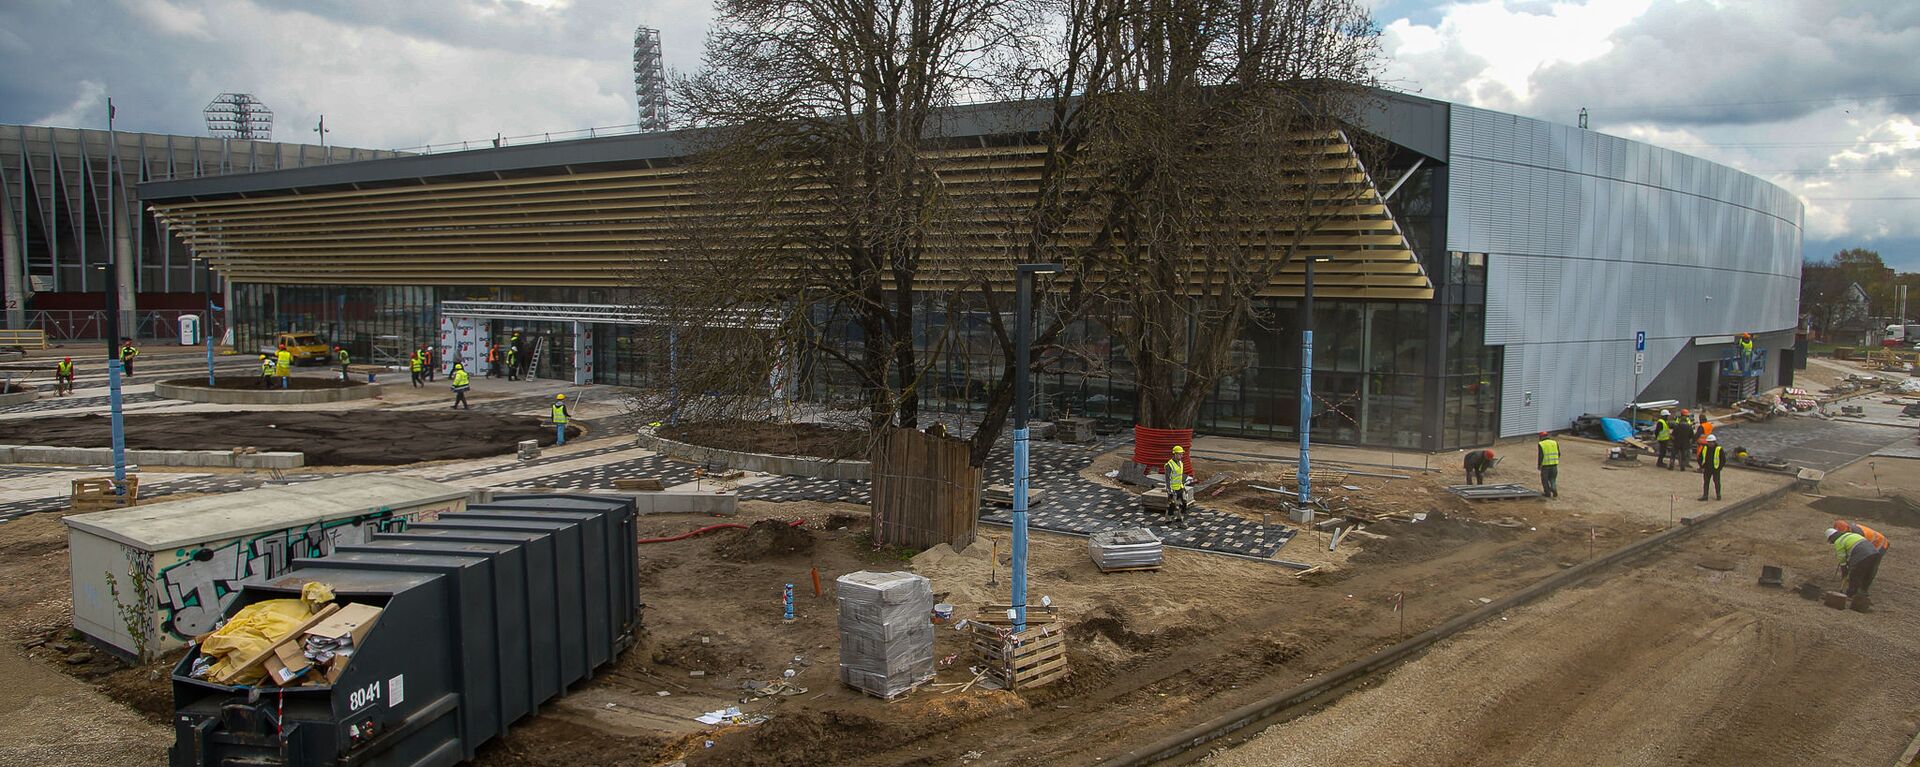 Строительные работы на новом ледовом холле на стадионе Даугава - Sputnik Латвия, 1920, 15.05.2021